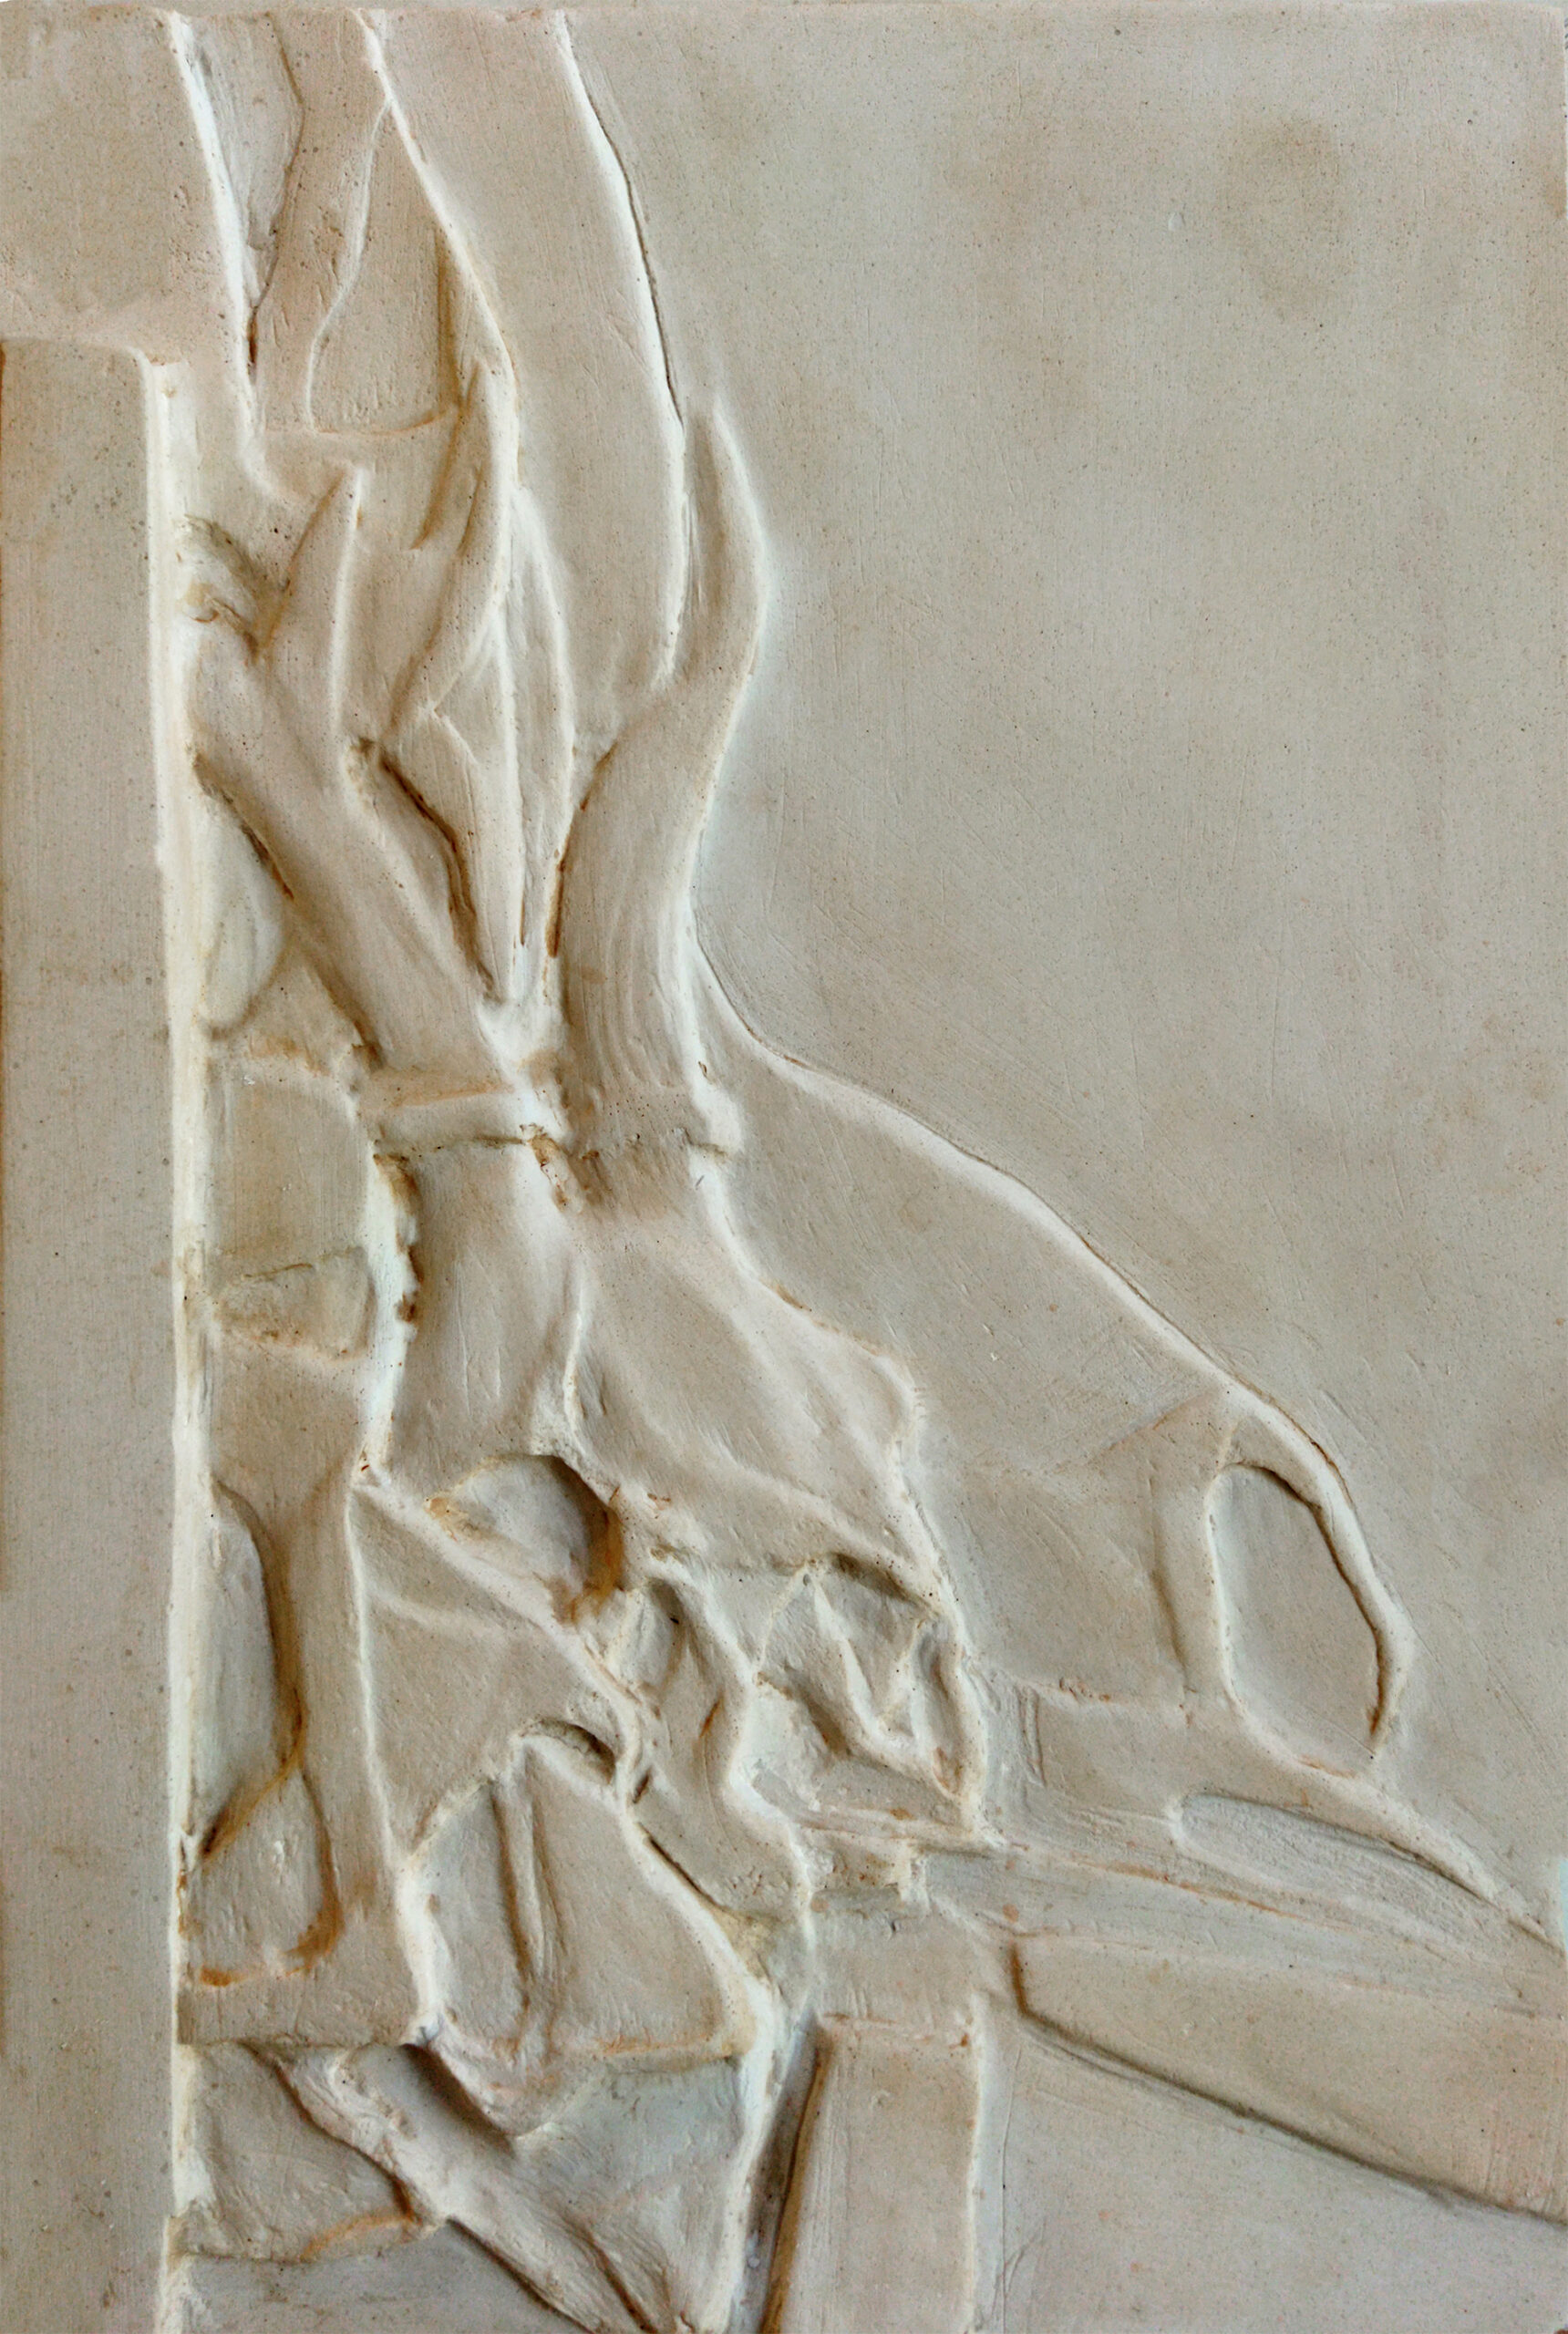 Gipsowa płaskorzeźba przedstawiająca martwą naturę. Na pierwszym planielewą część kompozycji dominuje czaszka i rogi zwierzęcia, wokół niej syntetycznieopracowana draperia. W tle również draperia, ale o nieco osłabionym walorze.